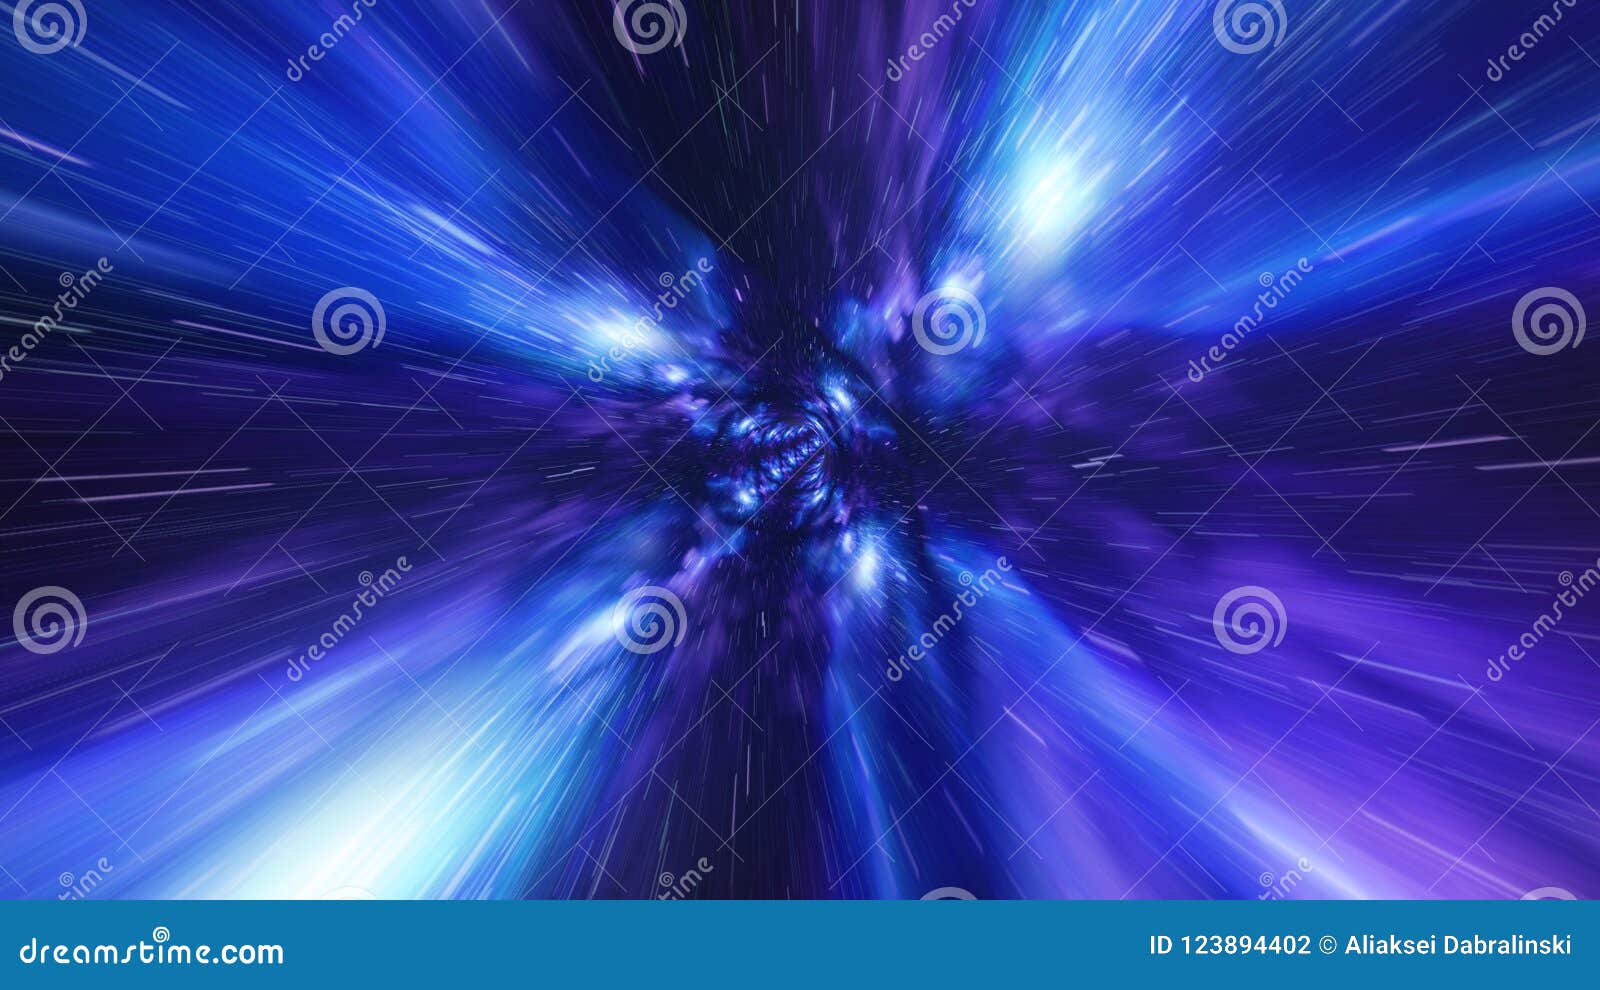 jump in time vortex tunnel blue galaxy background